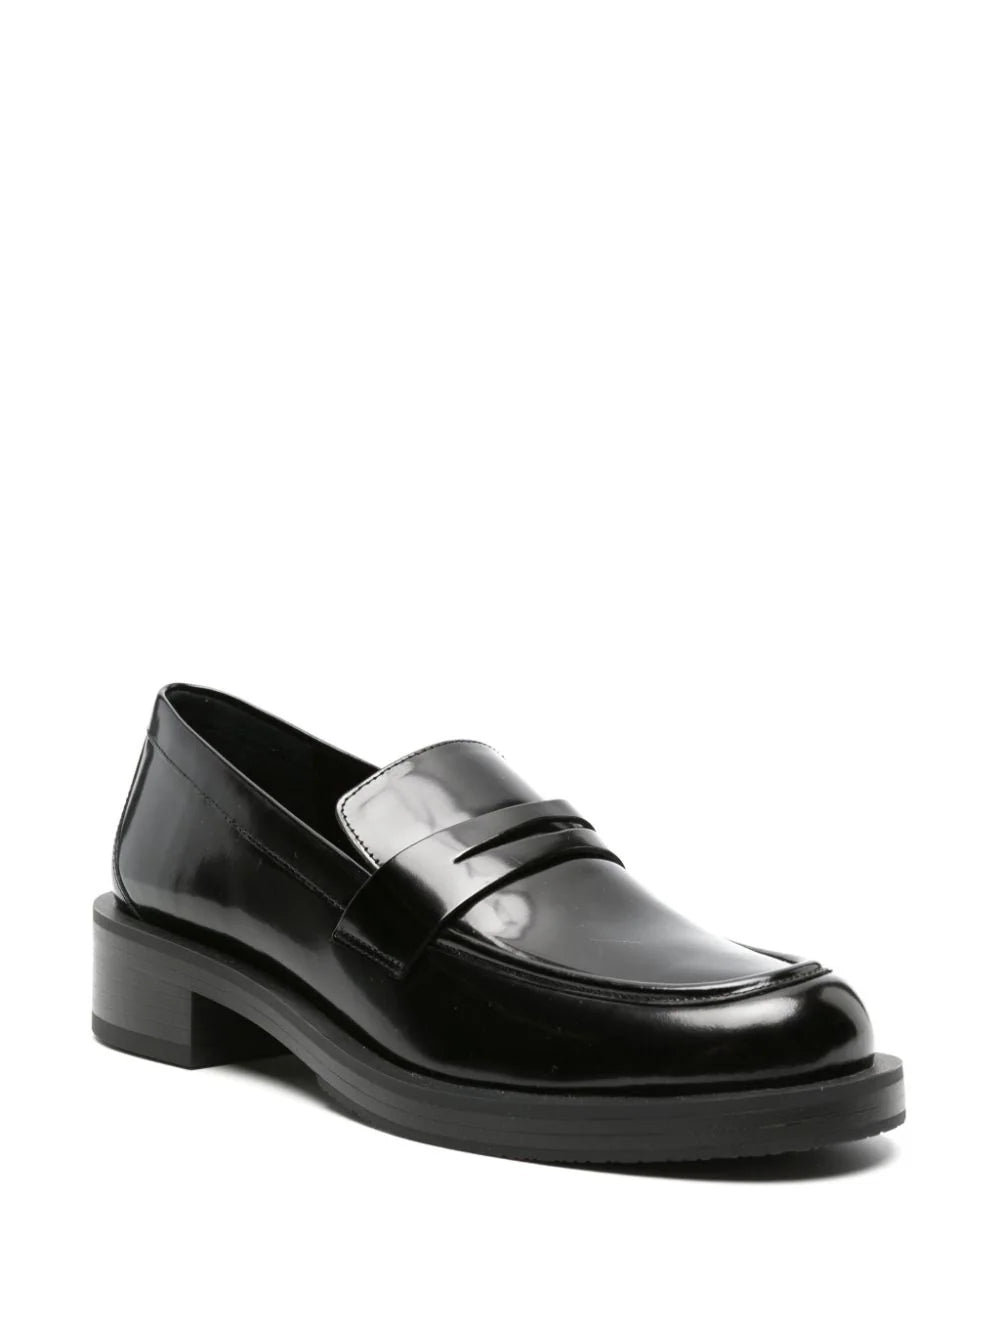 Stuart Weitzman SG649 Woman Black Flat shoes - Zuklat